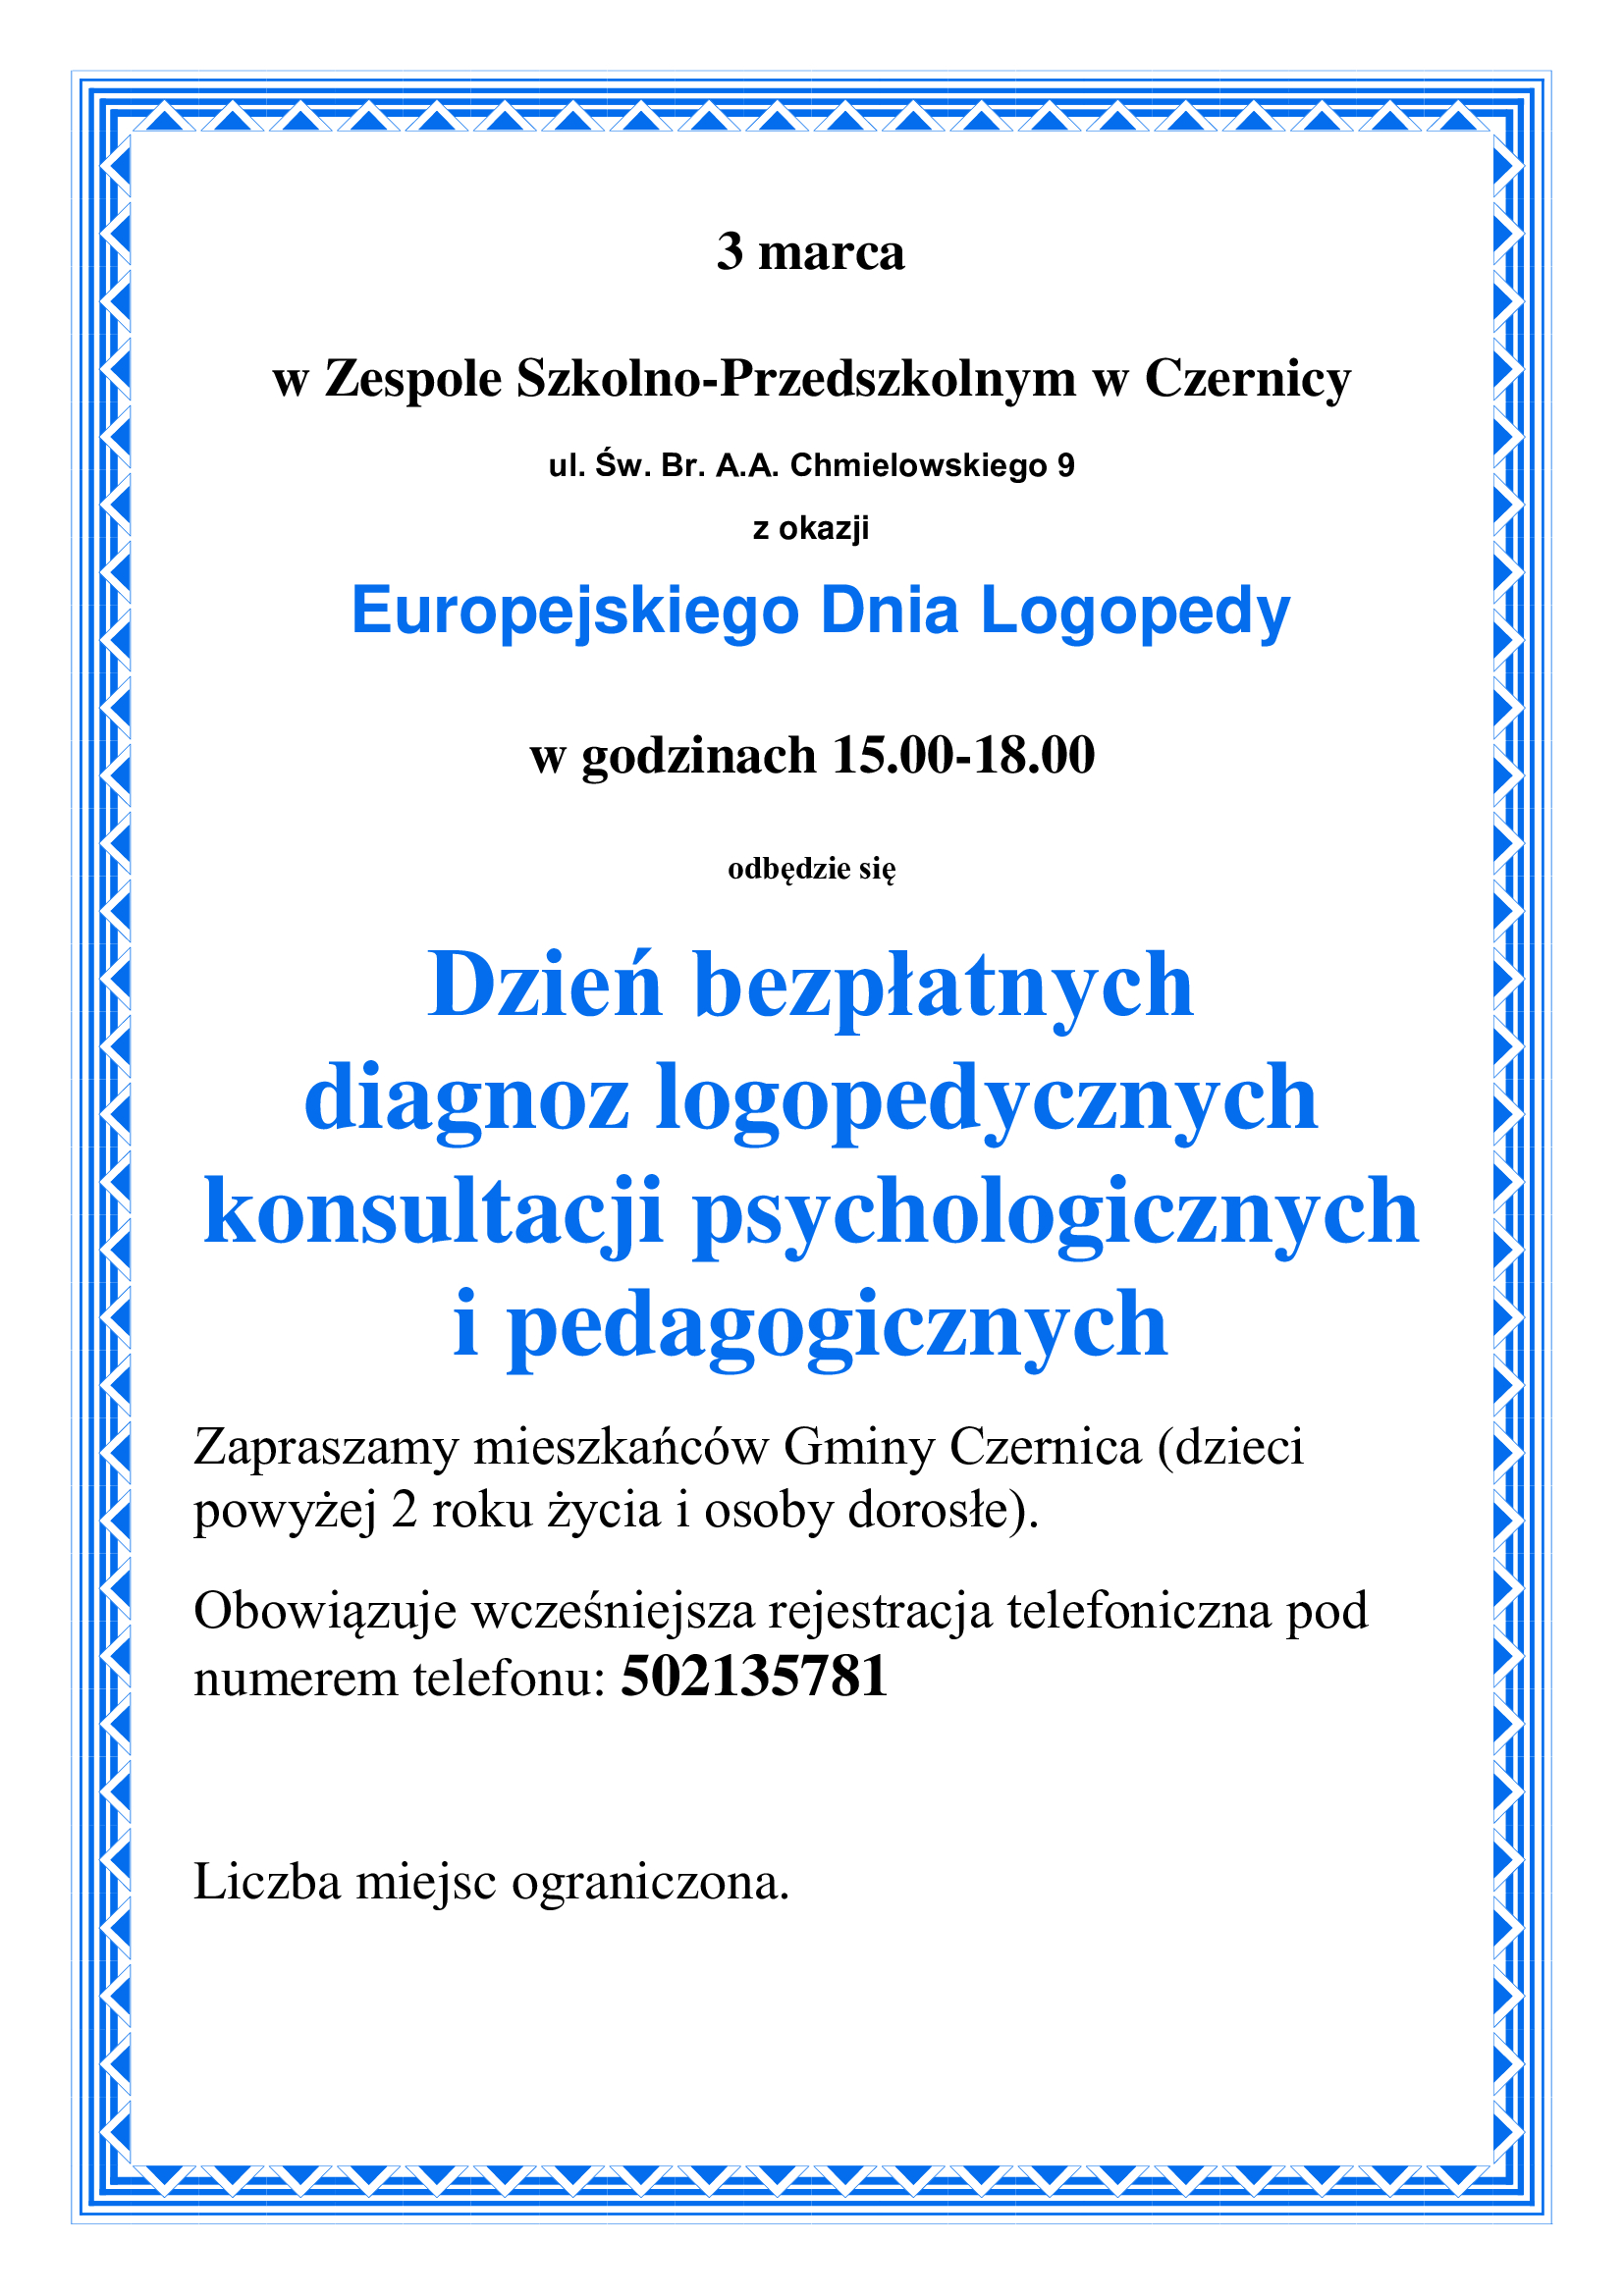 Dzień bezpłatnych diagnoz logopedycznych, konsultacji psychologicznych i pedagogicznych